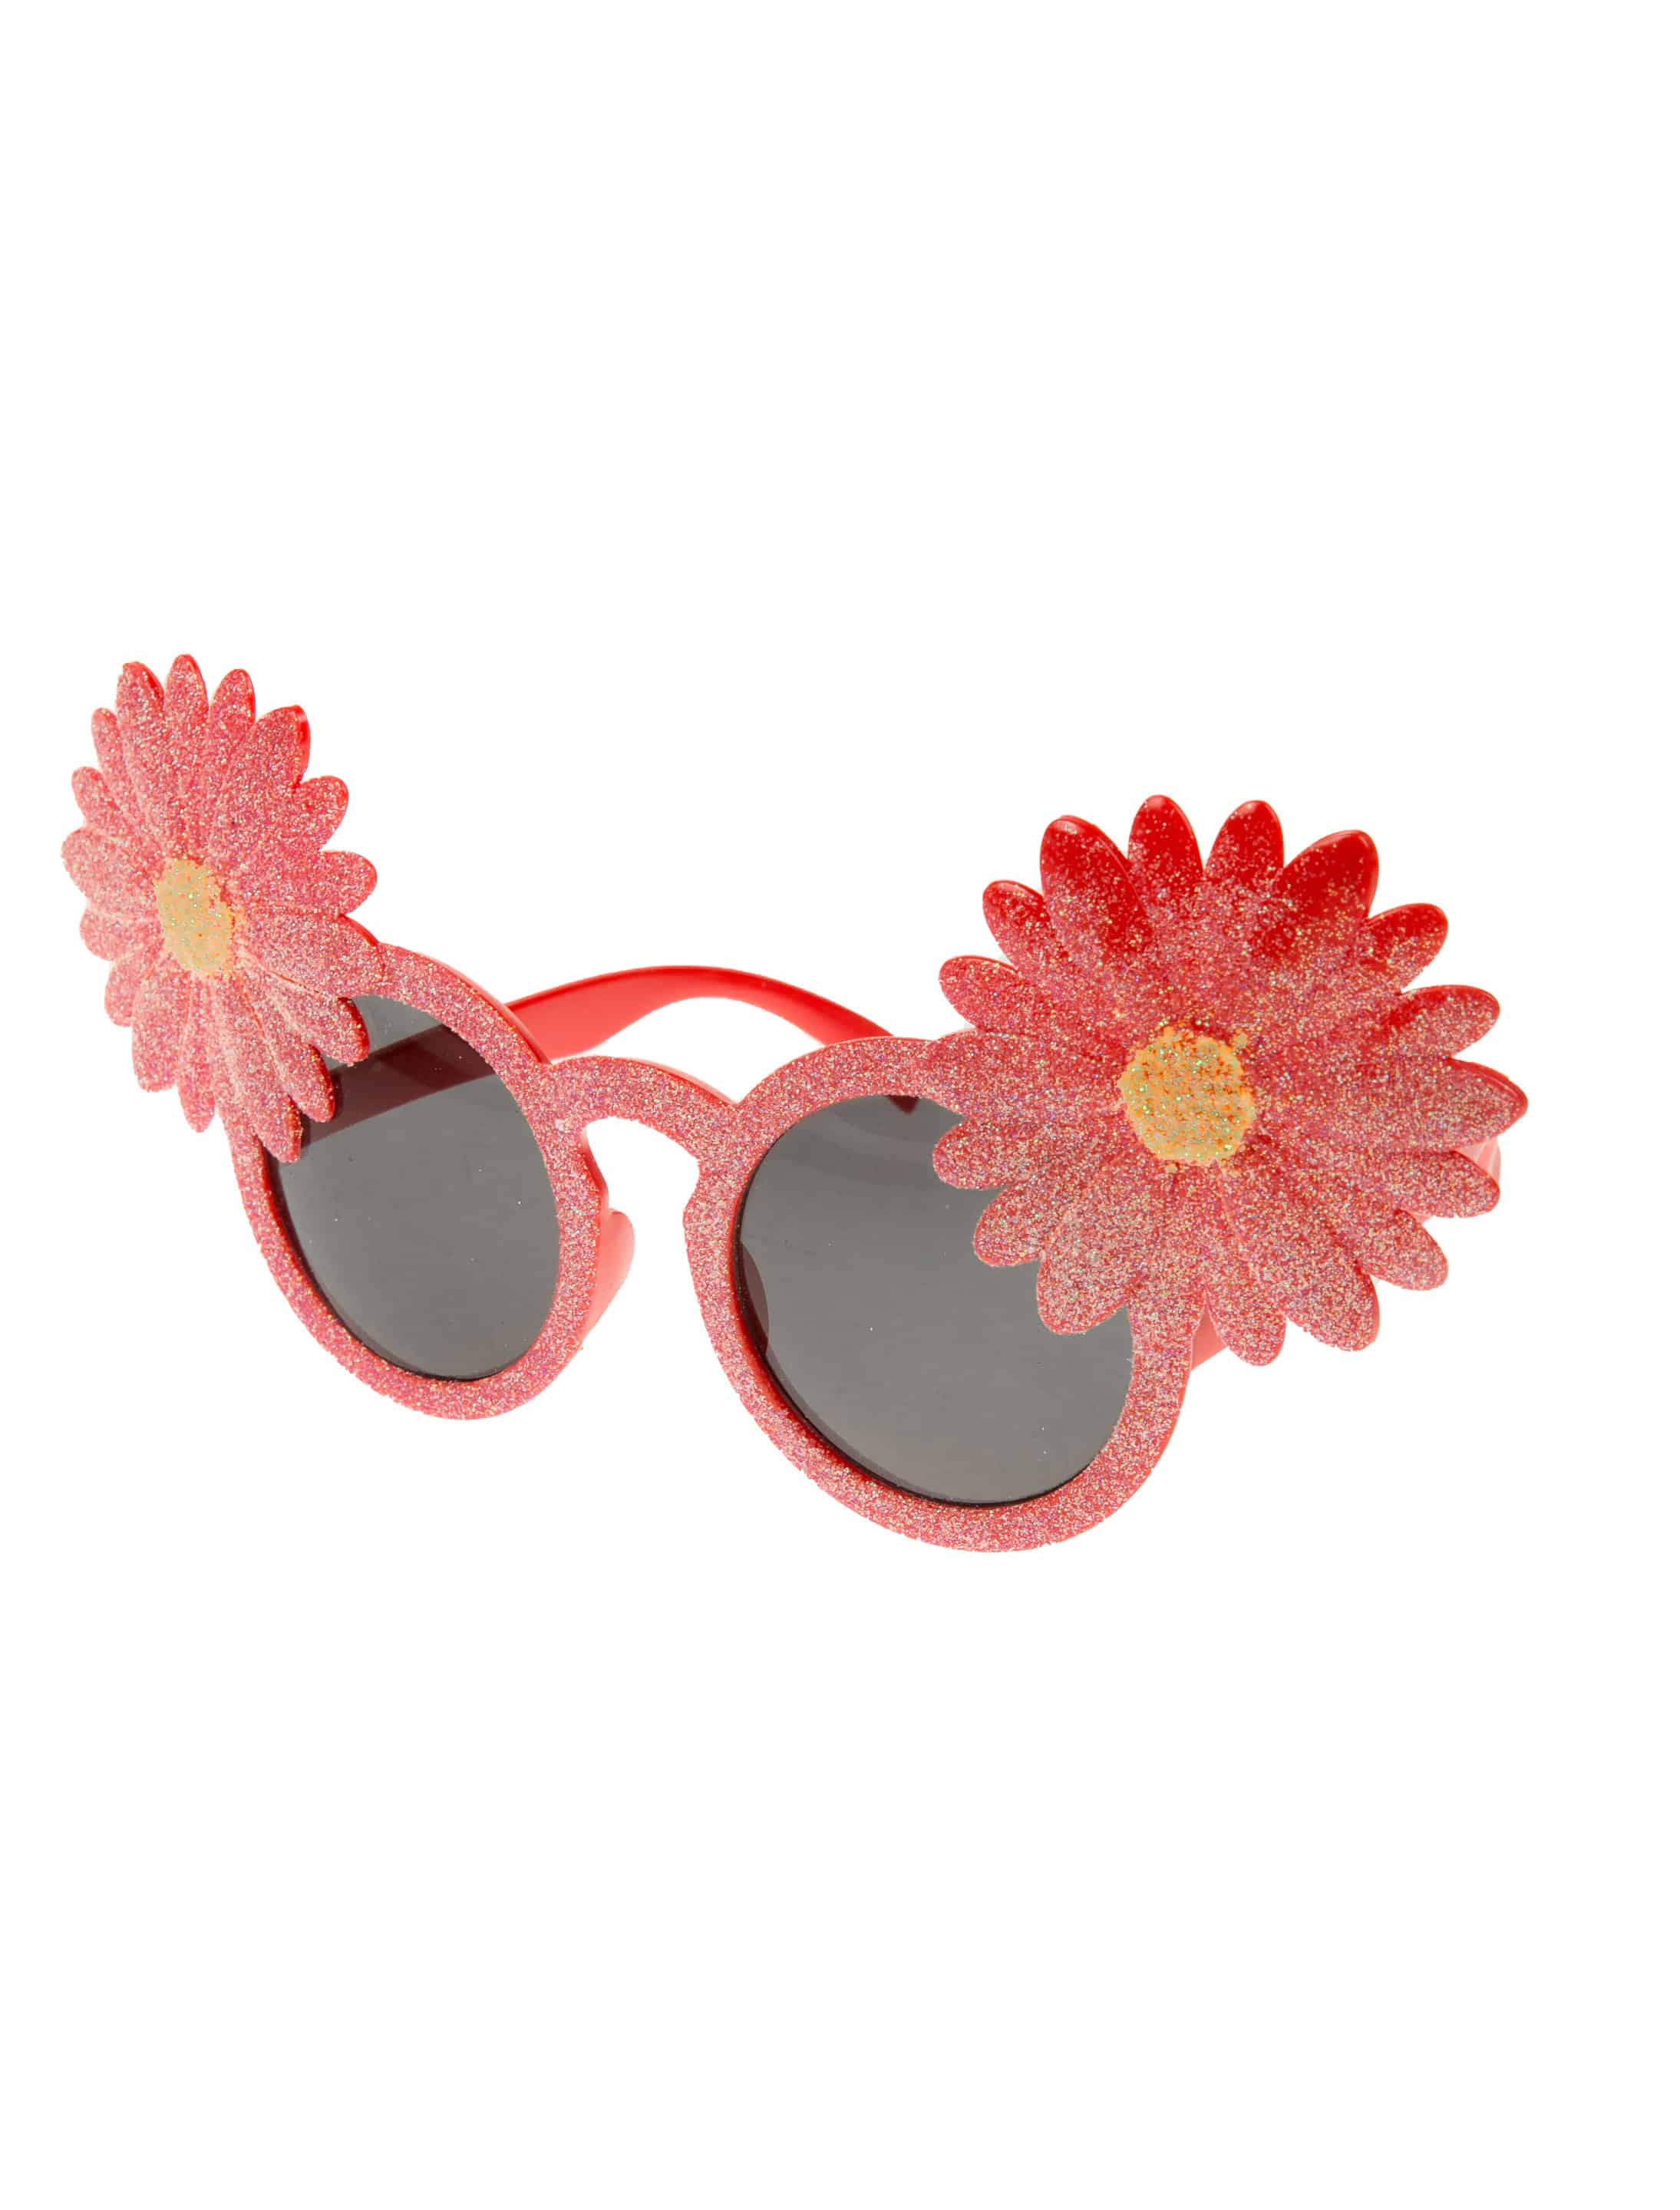 Brille mit Blumen pink